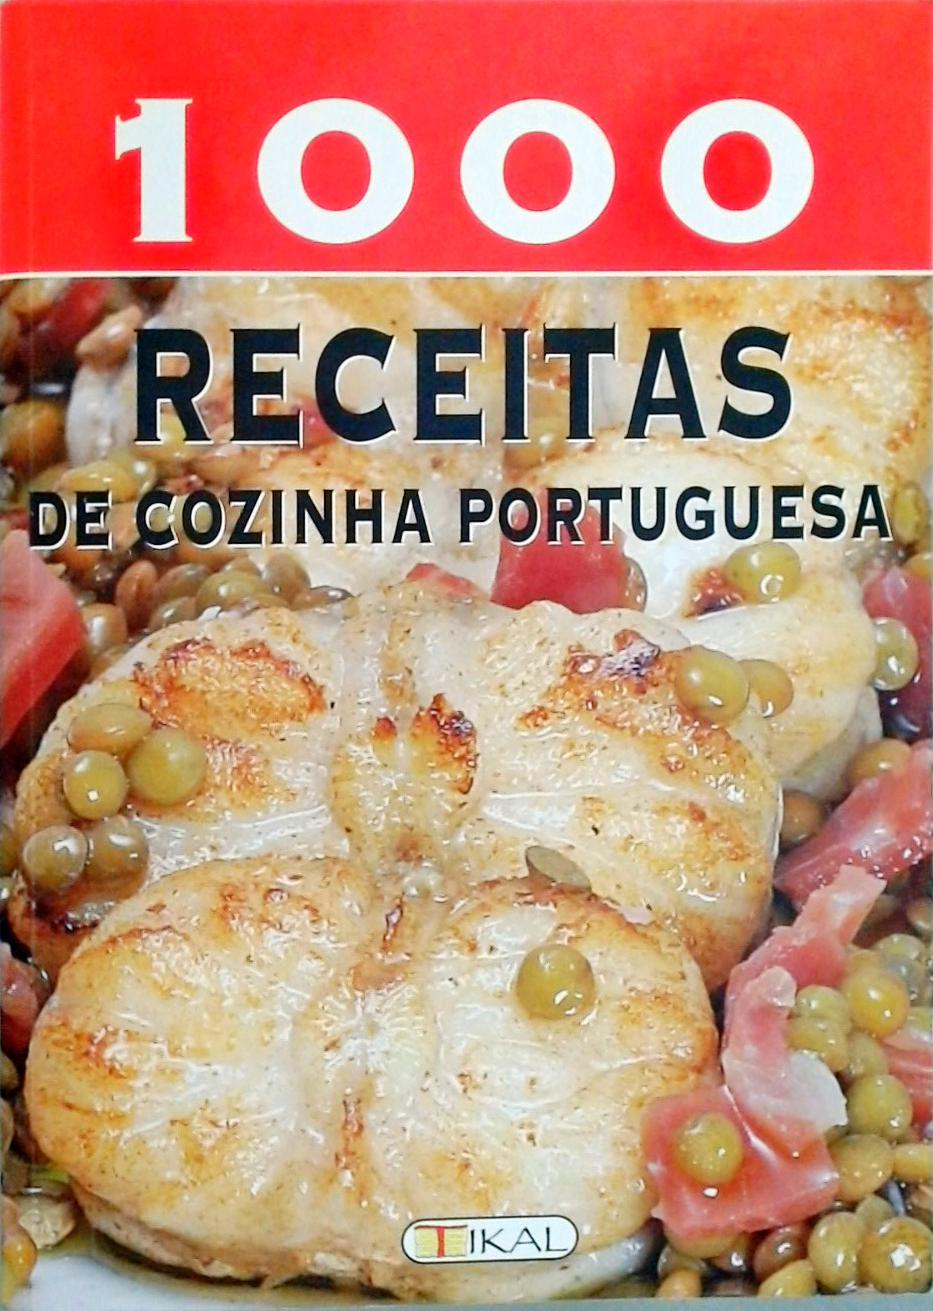 1000 Receitas de Cozinha Portuguesa